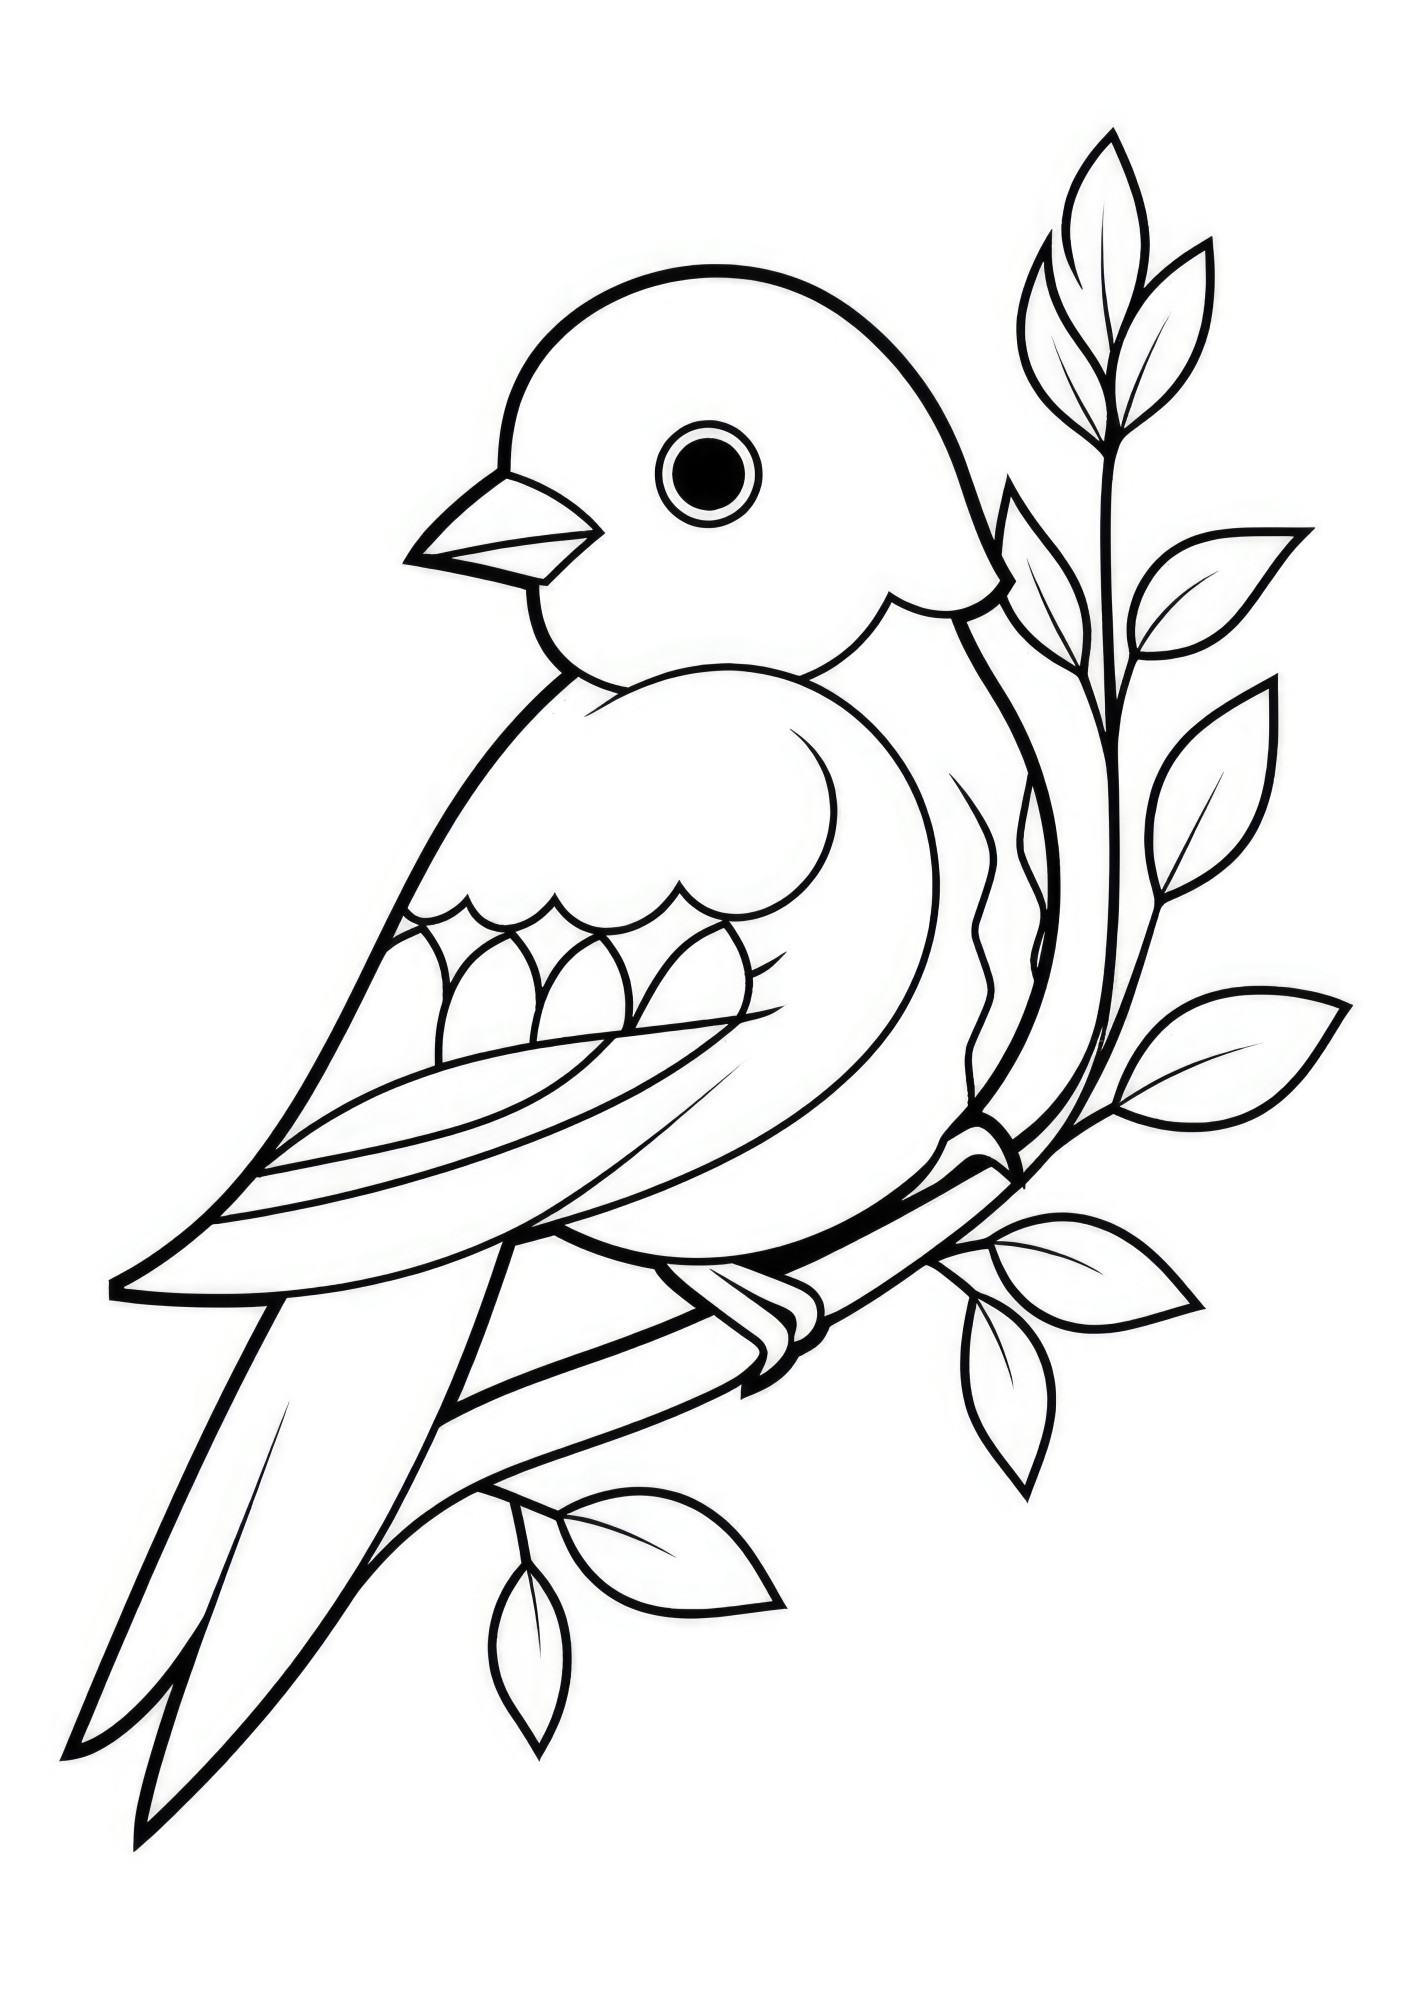 Раскраска для детей: милая птичка сидит на веточке с листьями